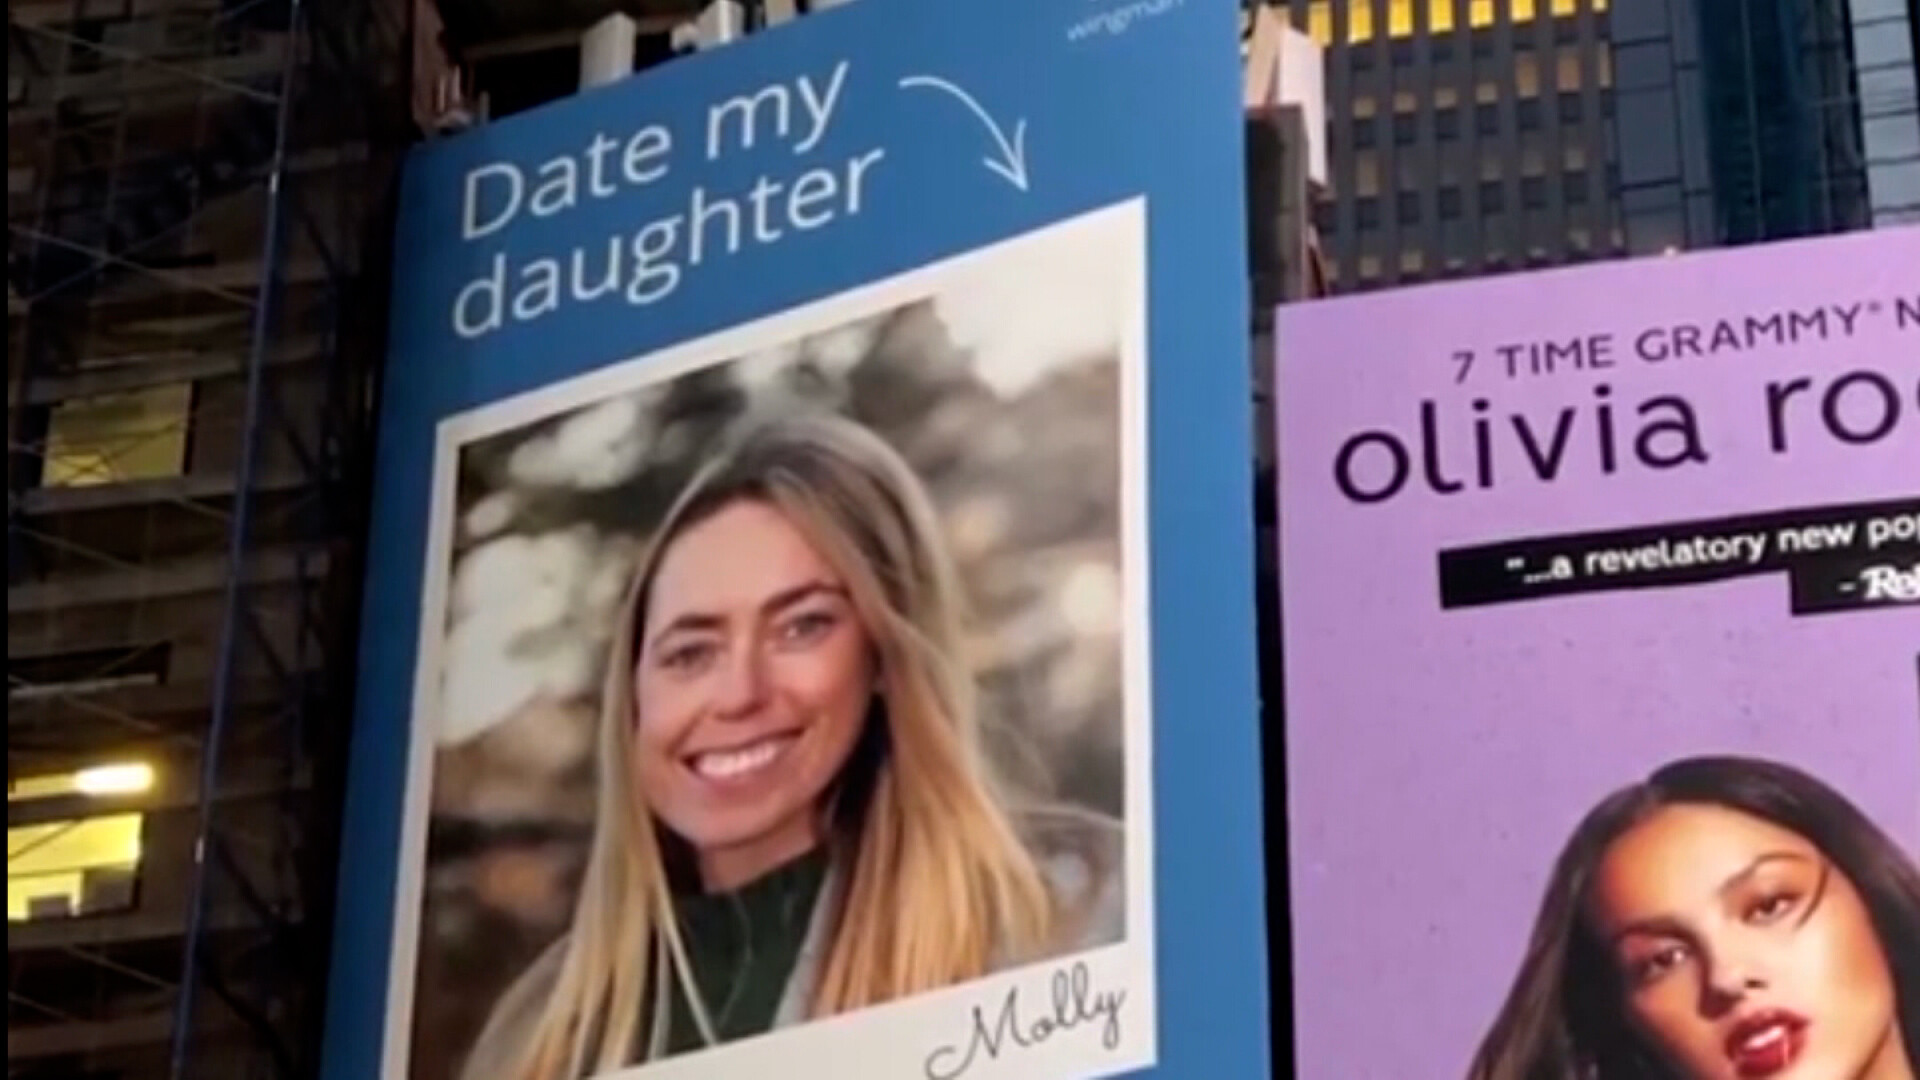 Nëna e prekur nga kanceri nxjerr në reklamën e sheshit Times Square foton e vajzës për t’i gjetur partnerin ideal